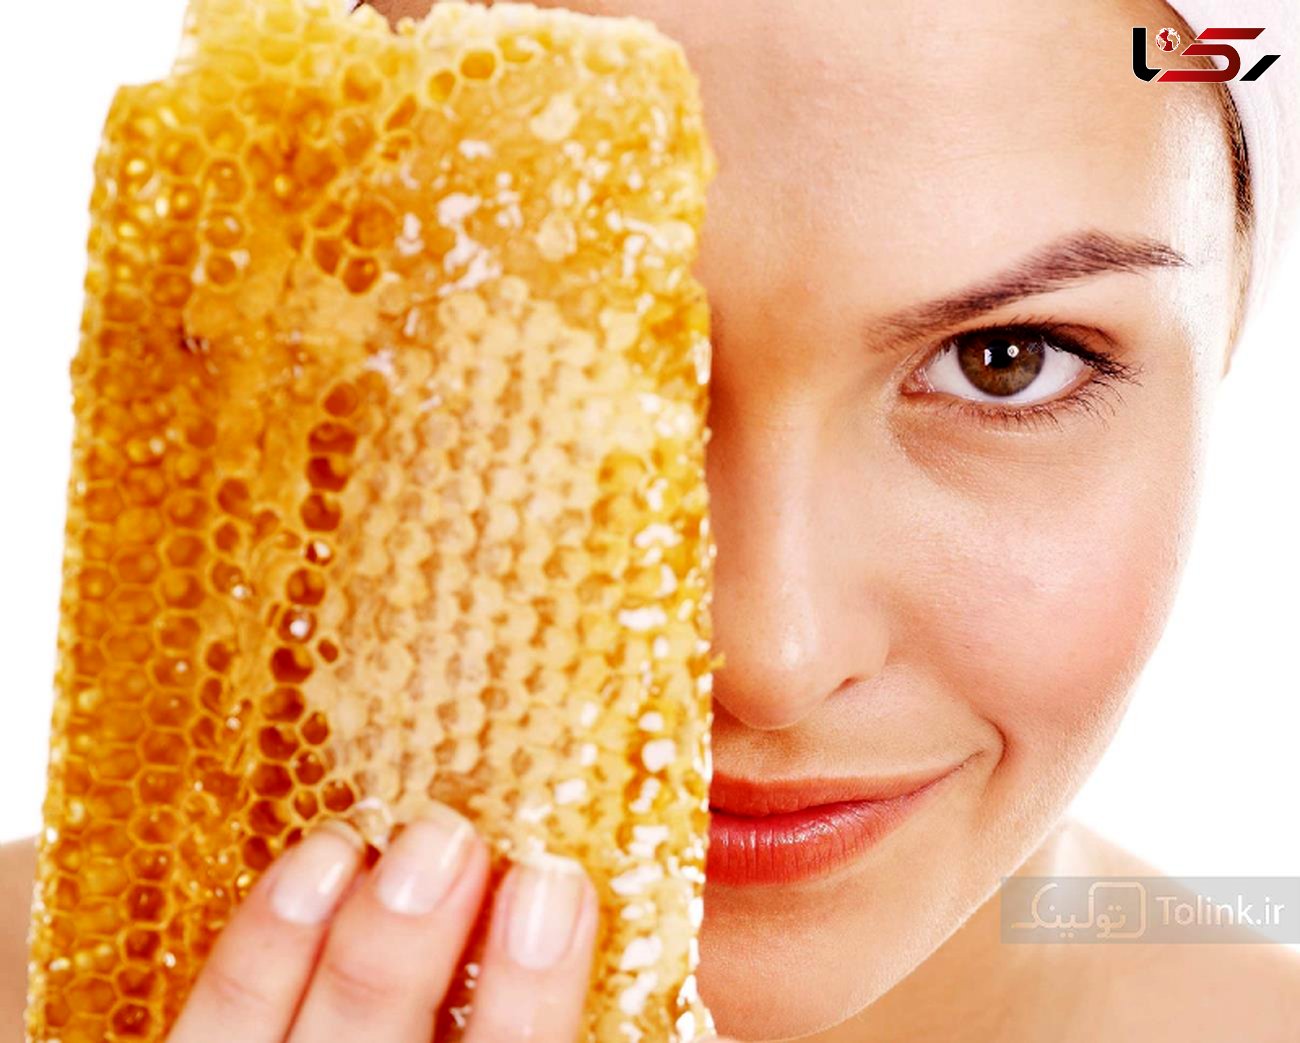 تاثیر شگفت انگیز ماسک عسل برای پوست